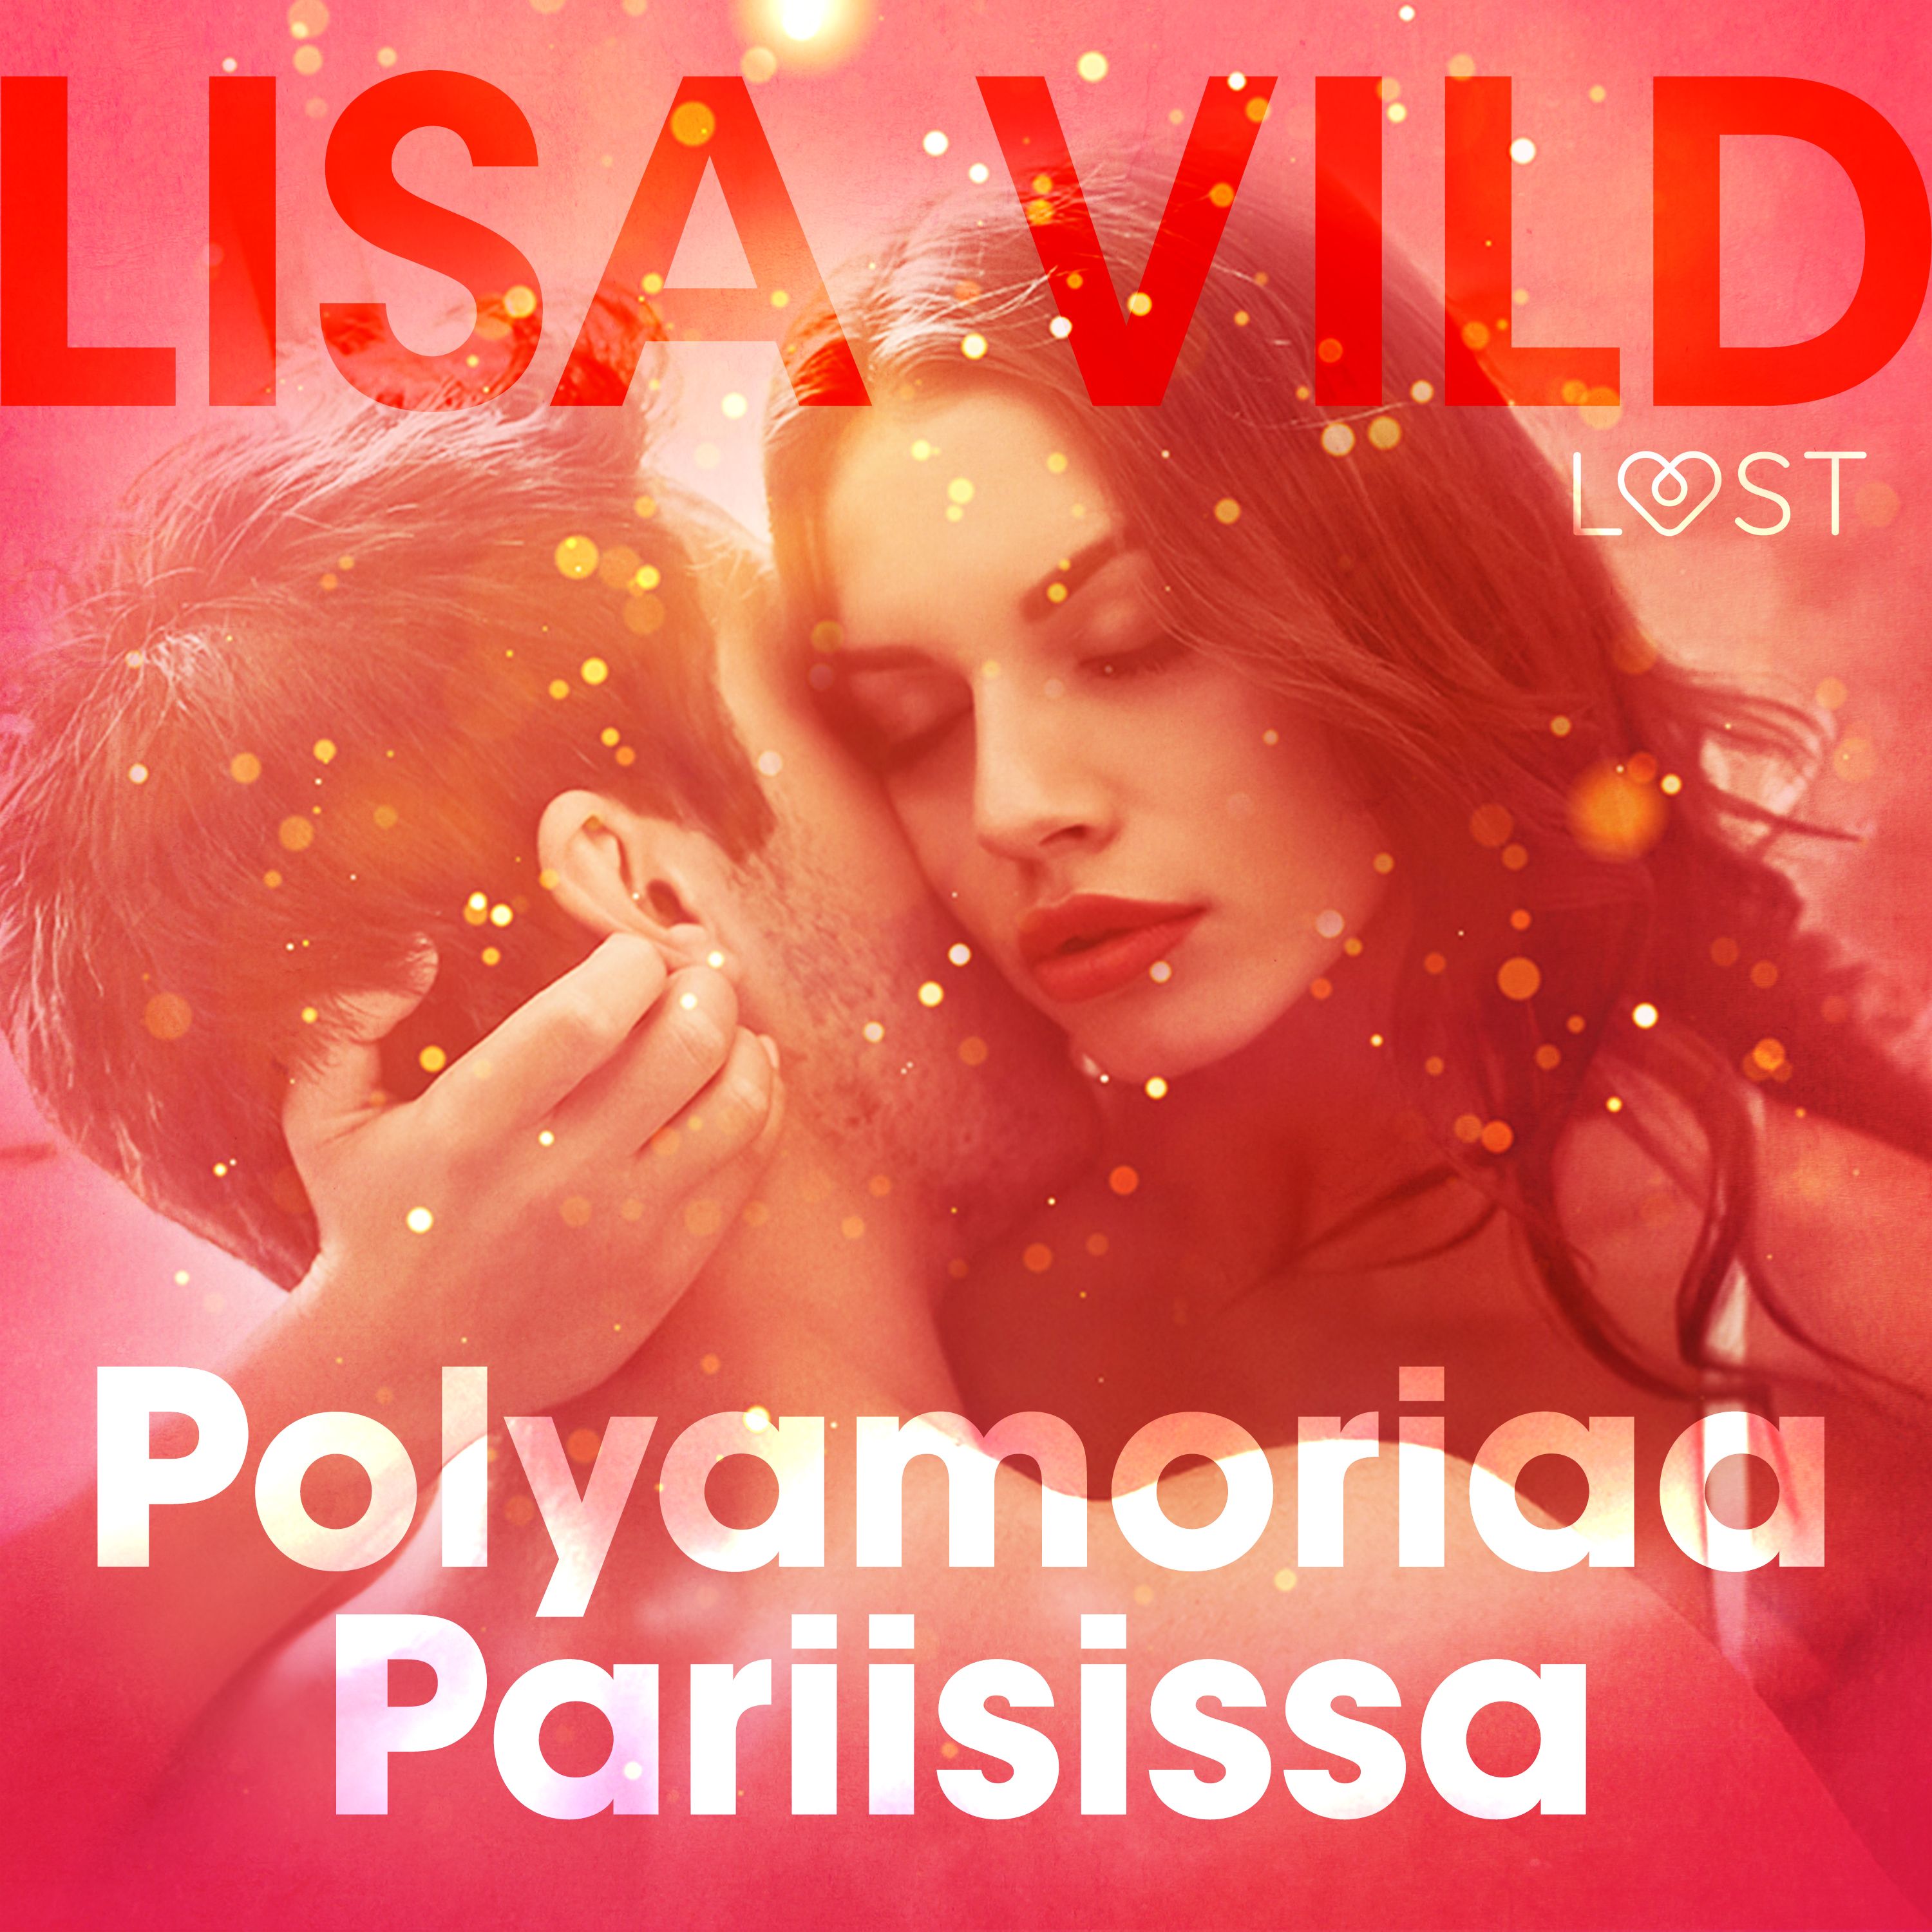 Polyamoriaa Pariisissa – eroottinen novelli, ljudbok av Lisa Vild